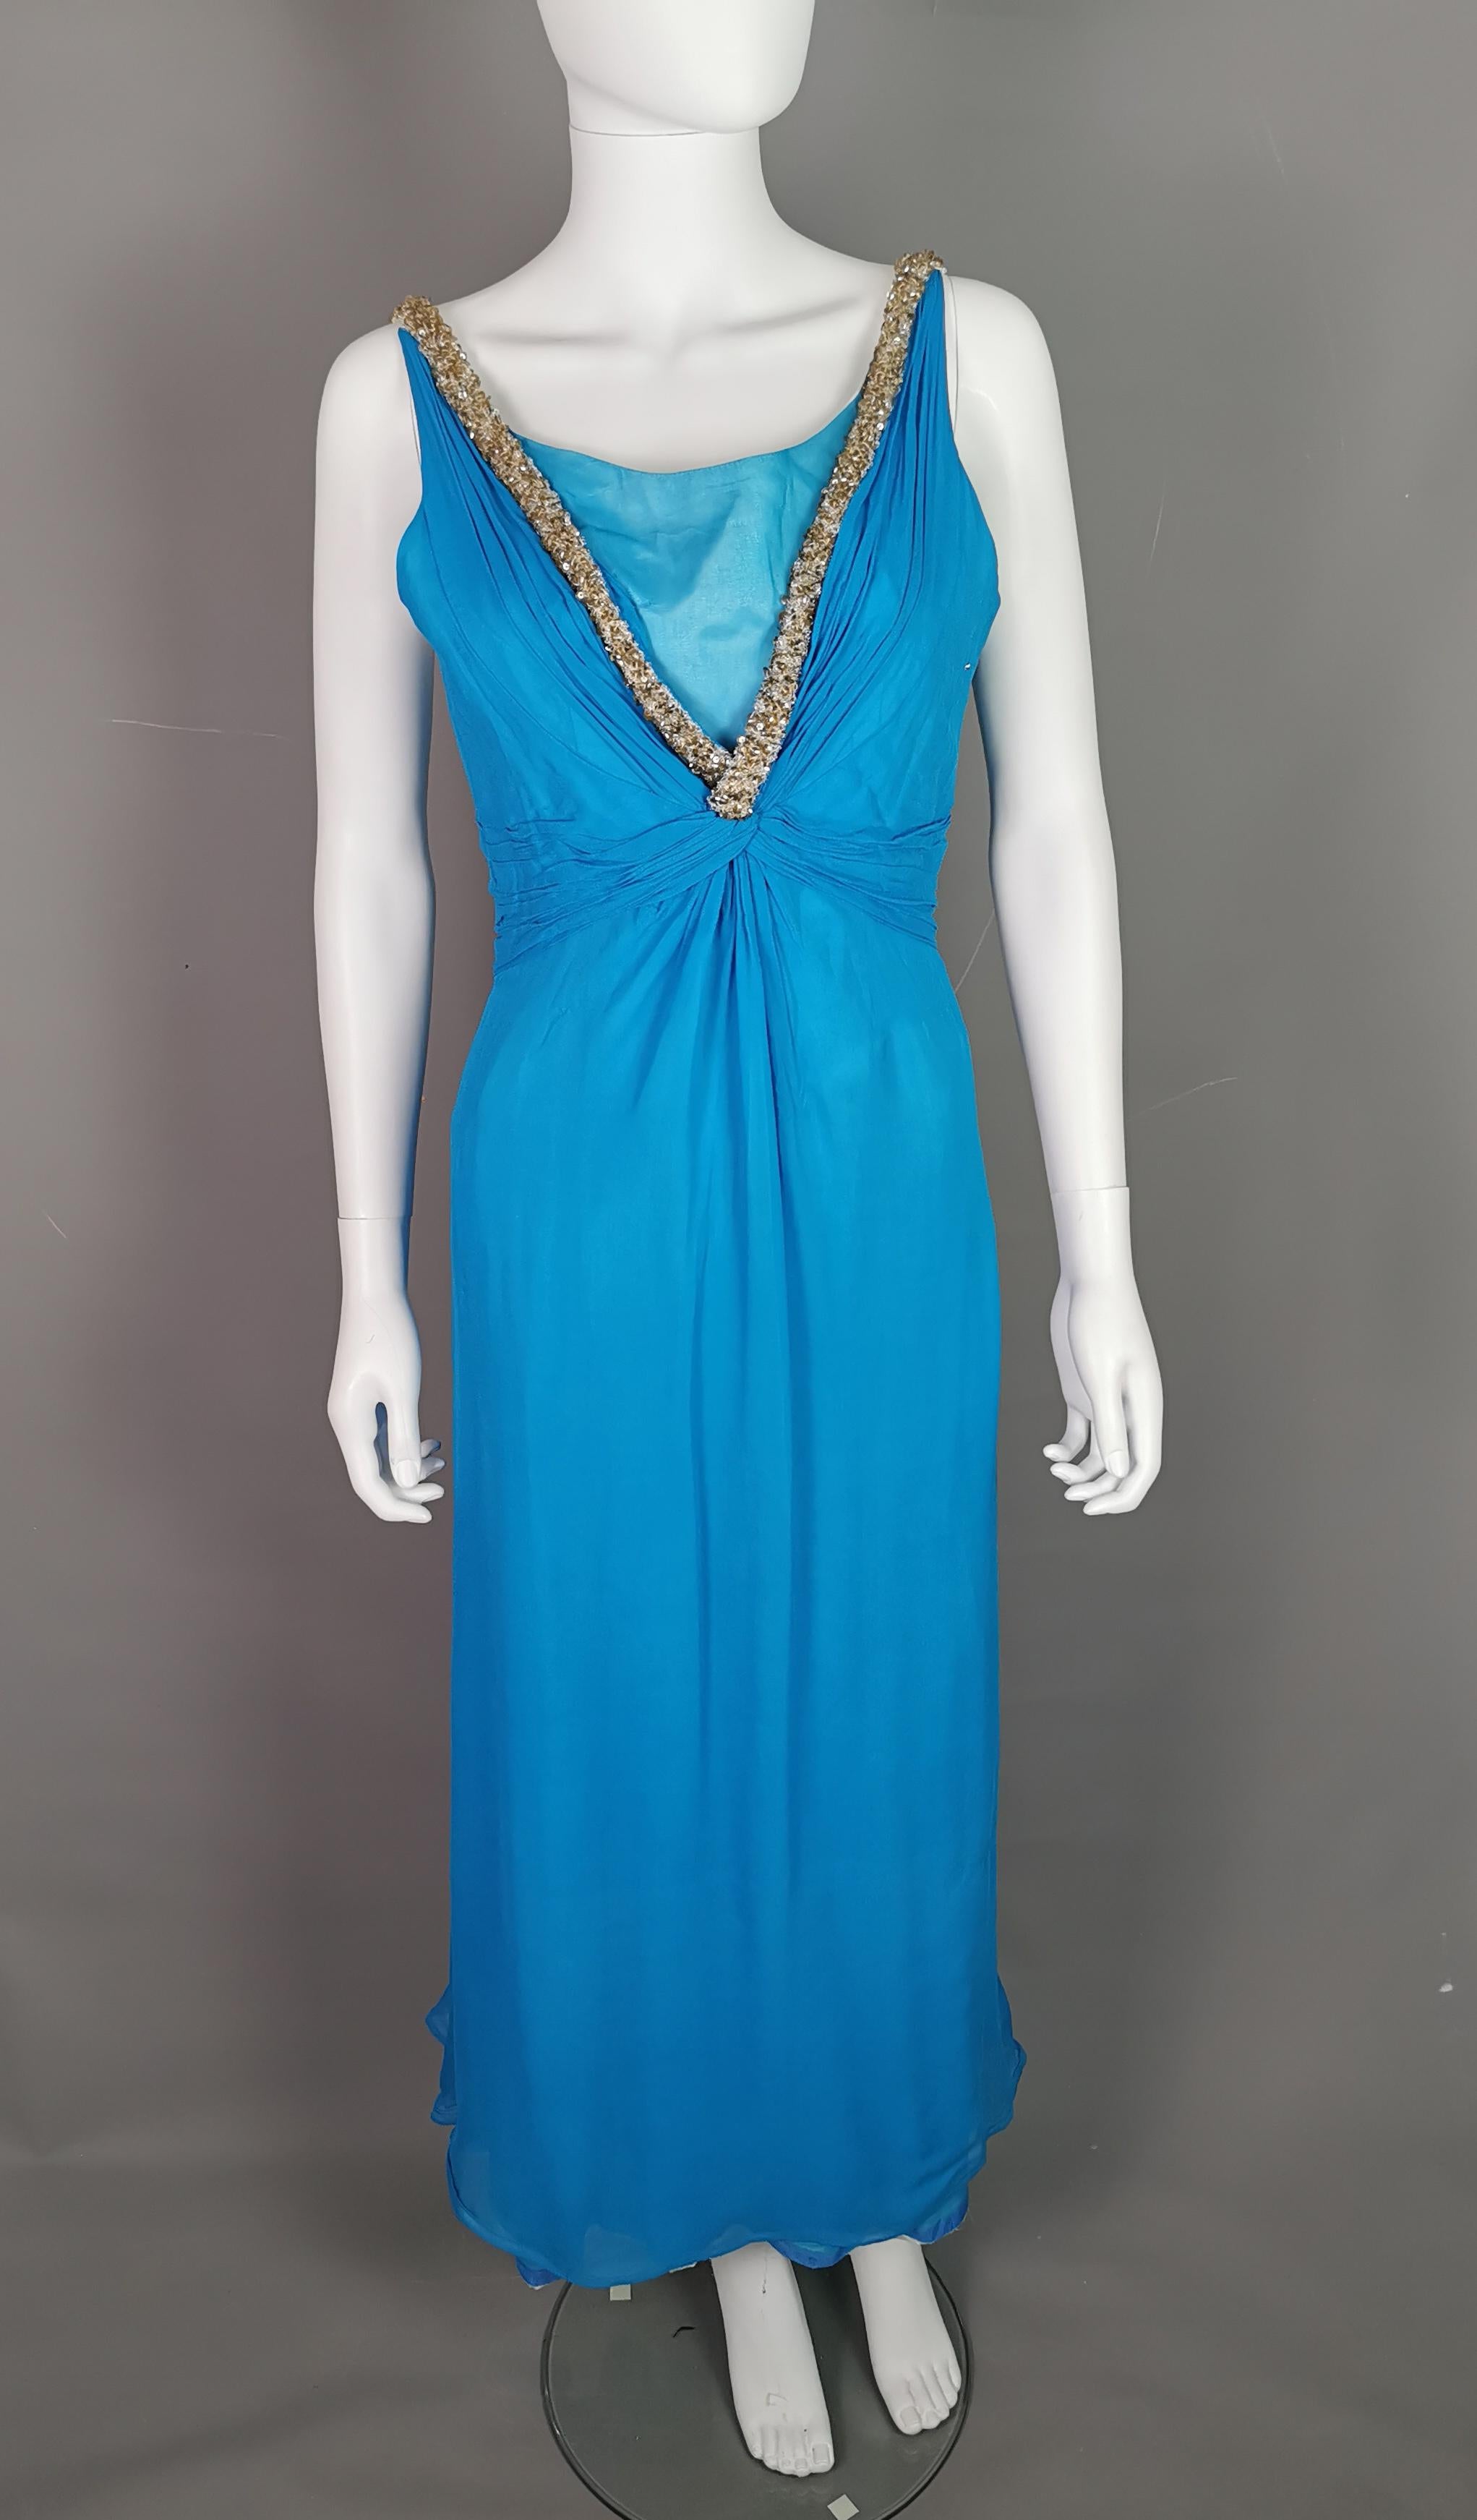 Ein wunderschönes Abendkleid aus den 1970er Jahren von Emma Domb.

Dieses Kleid hat einen Hauch von Prinzessin, es ist lang und aus leuchtend blauem Seidenchiffon. Der V-Ausschnitt ist mit einem Overlay und einer Schamhaube versehen.

Die Träger und